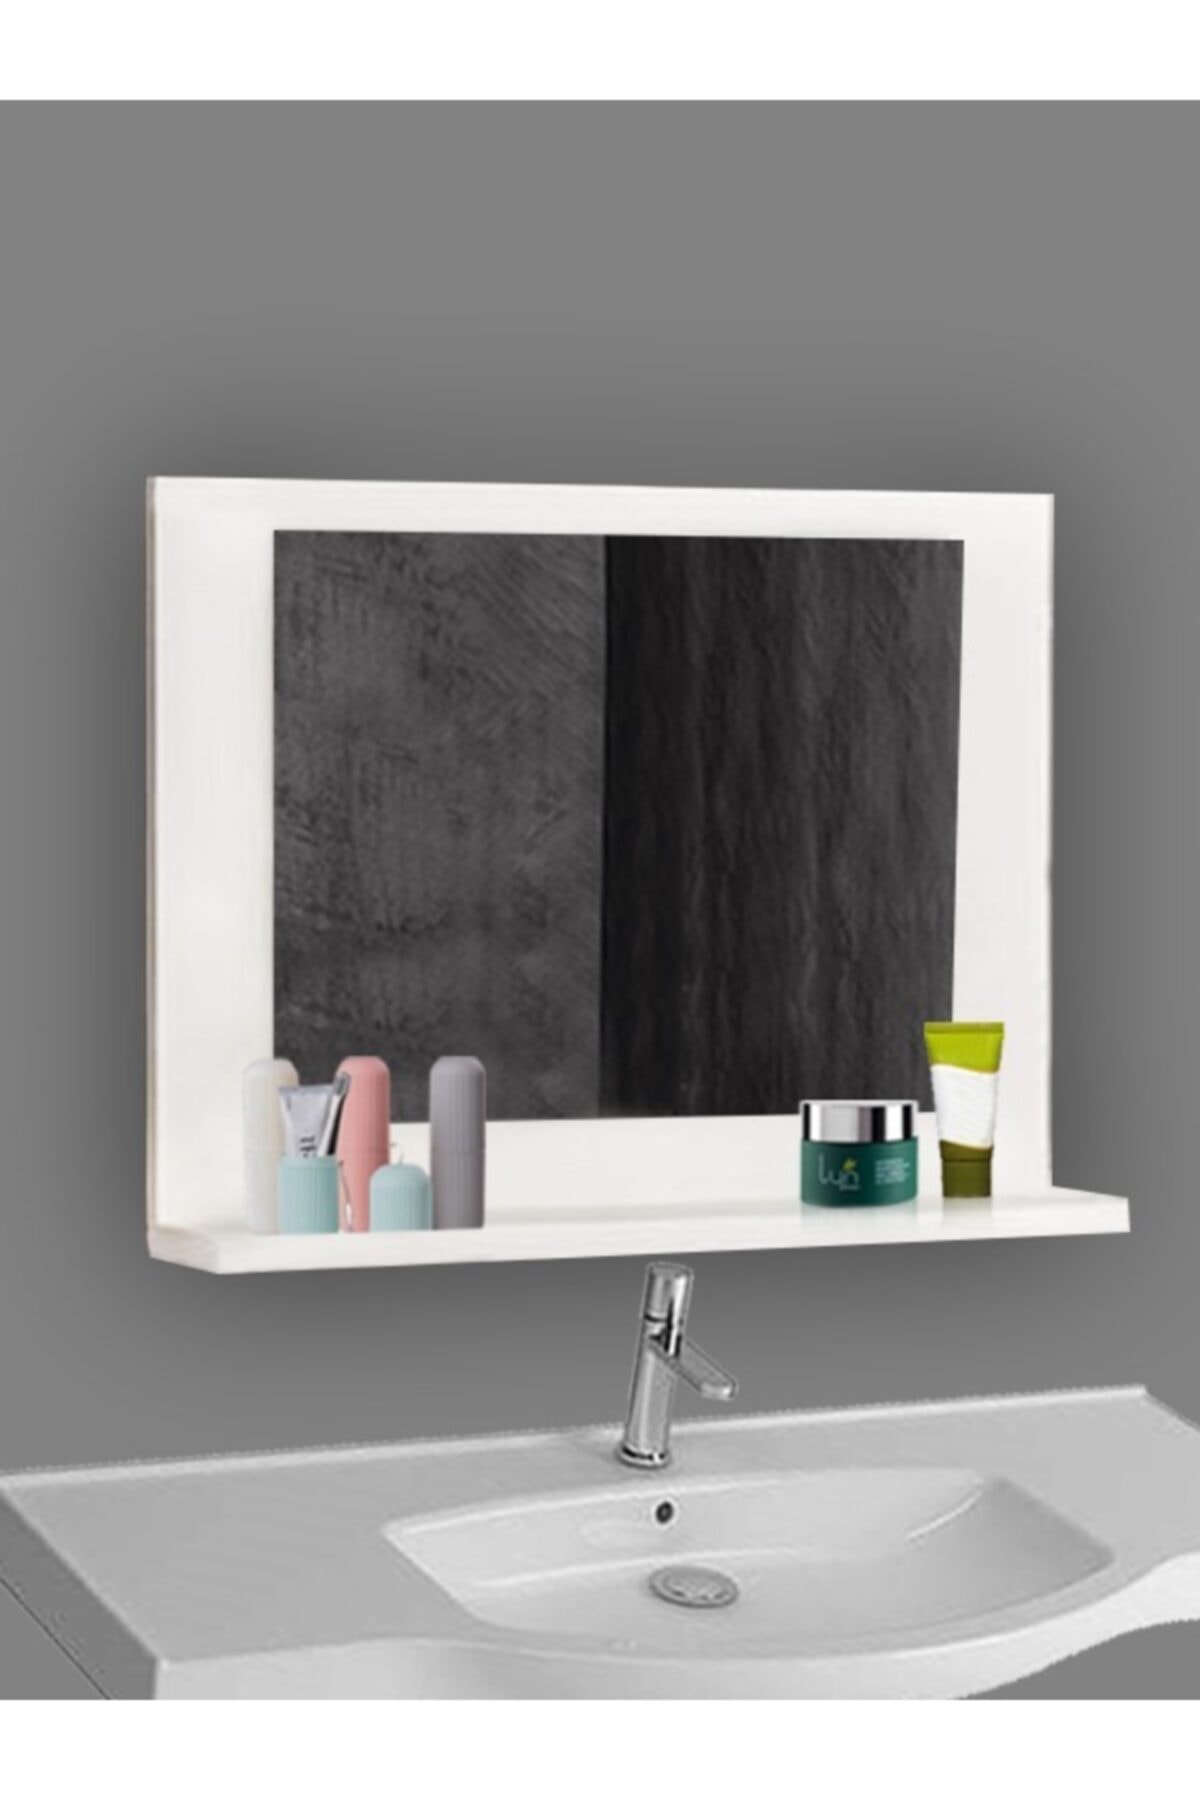 Ka-libra Raflı Banyo Aynası Raflı Banyo Dolabı Banyo Duzenleyici Dresuar Aynası Bahçe Lavabo Aynası